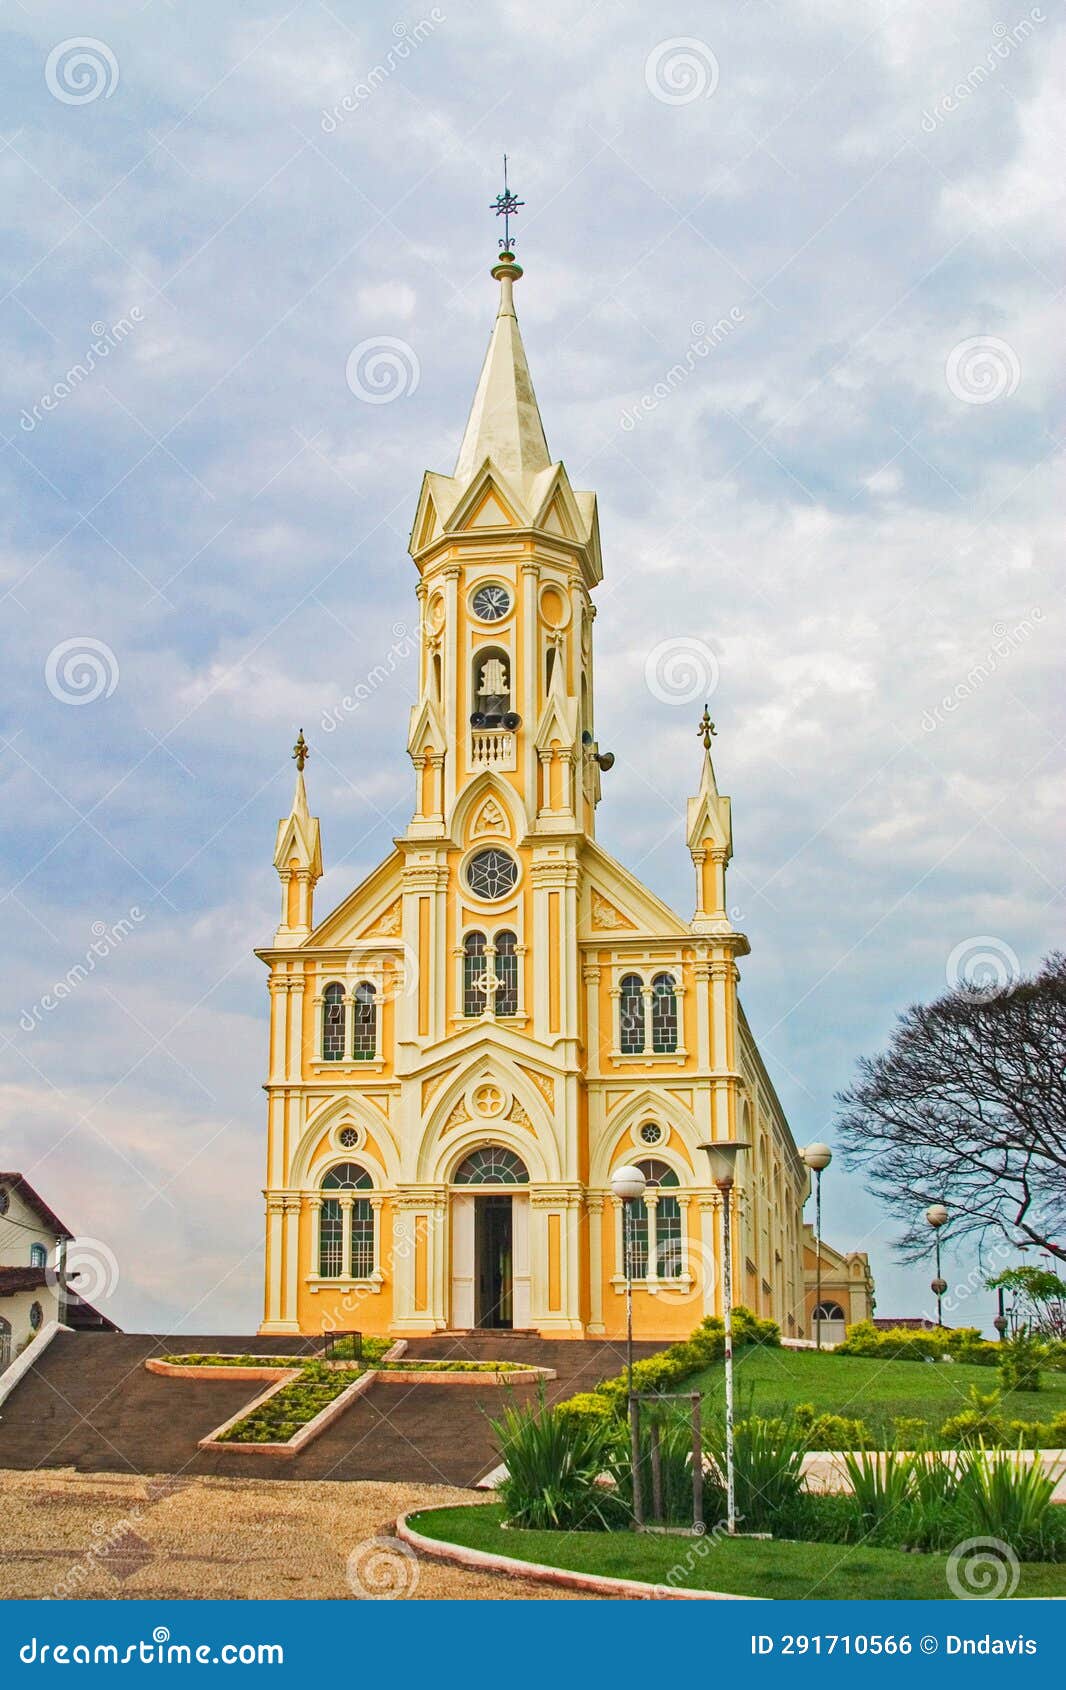 church of nossa senhora das brotas, entre rios de minas, brazil